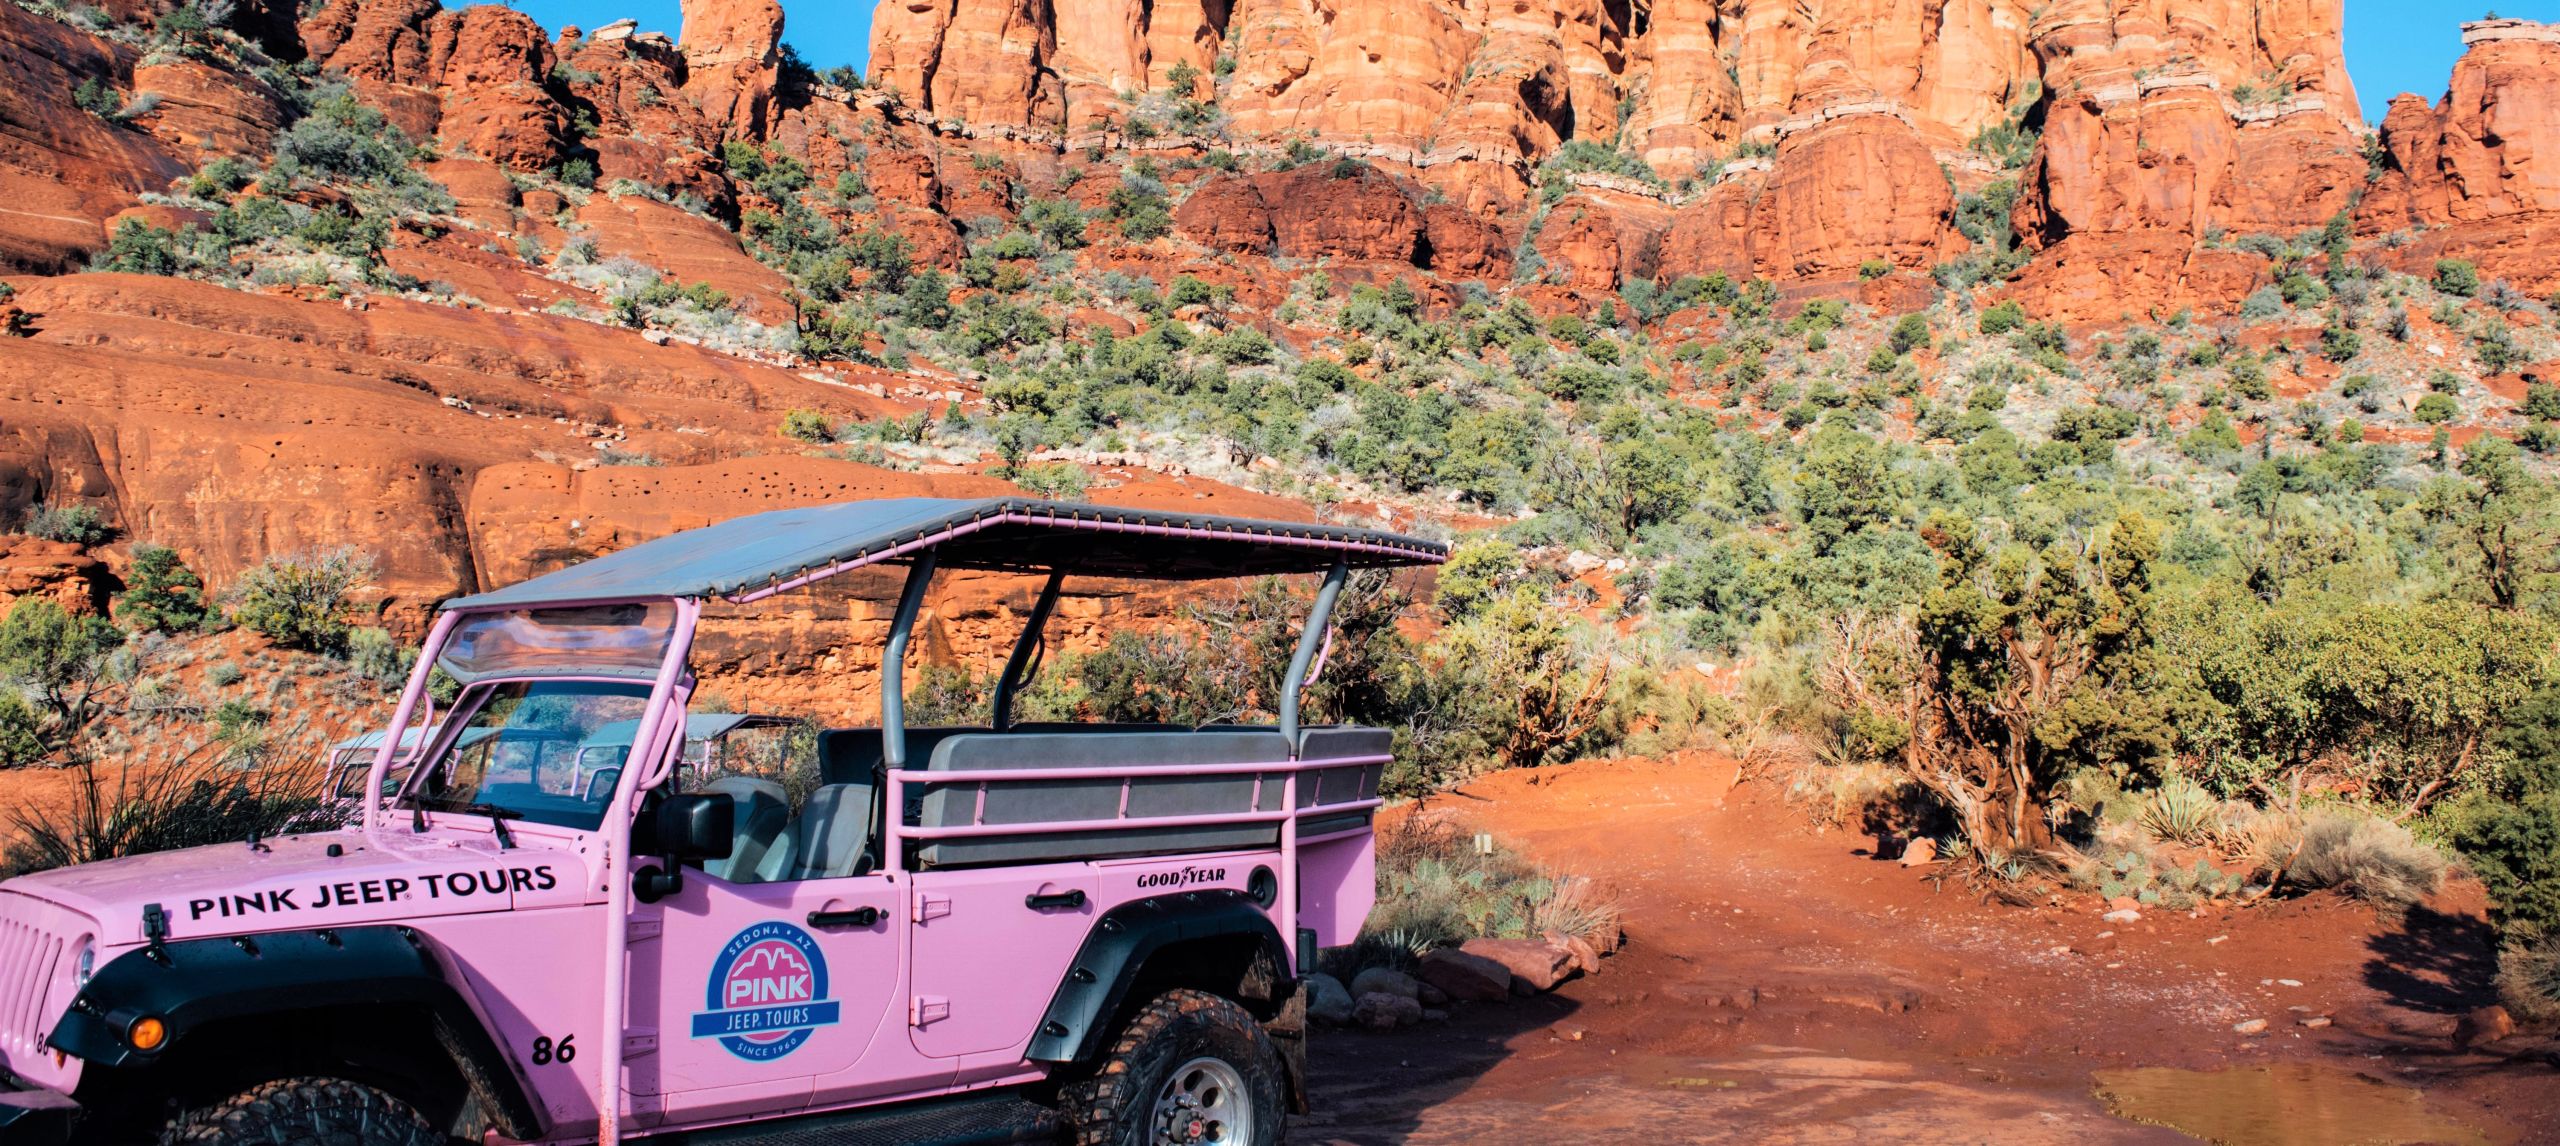 Jeep rosa frente a rocas rojas